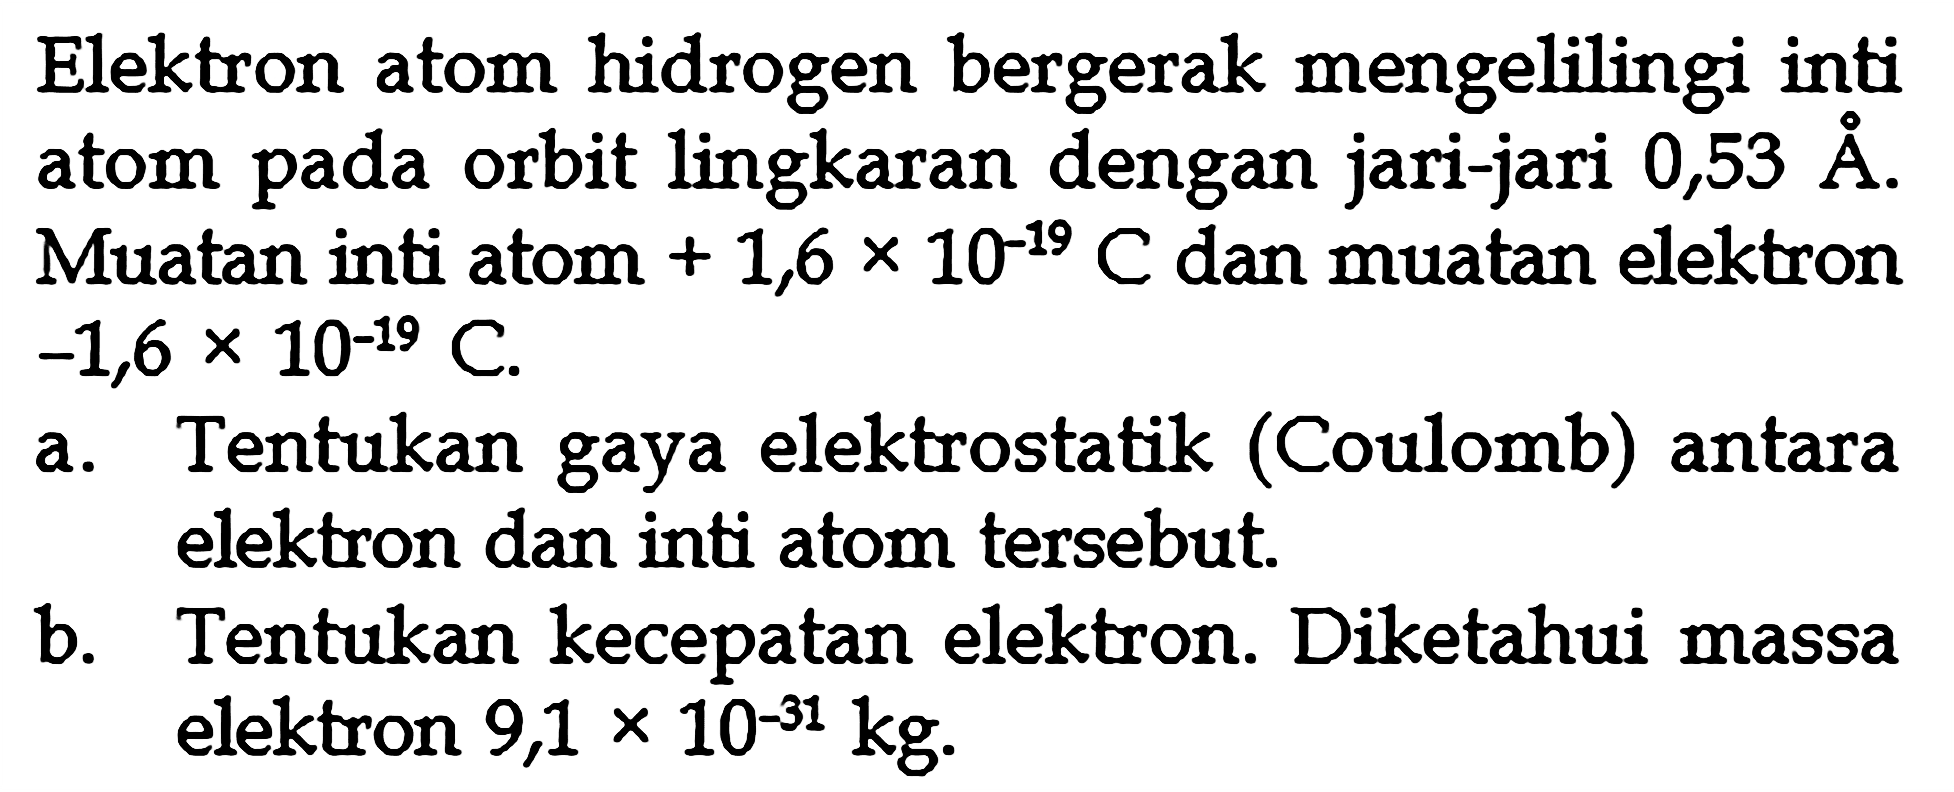 Elektron atom hidrogen bergerak mengelilingi inti atom pada orbit lingkaran dengan jari-jari 0,53A. Muatan inti atom + 1,6 x 10^-19 C dan muatan elektron -1,6 x 10^-19 C. a. Tentukan gaya elektrostatik (Coulomb) antara elektron dan inti atom tersebut. b. Tentukan kecepatan elektron. Diketahui massa elektron 9,1 x 10^-31 kg.